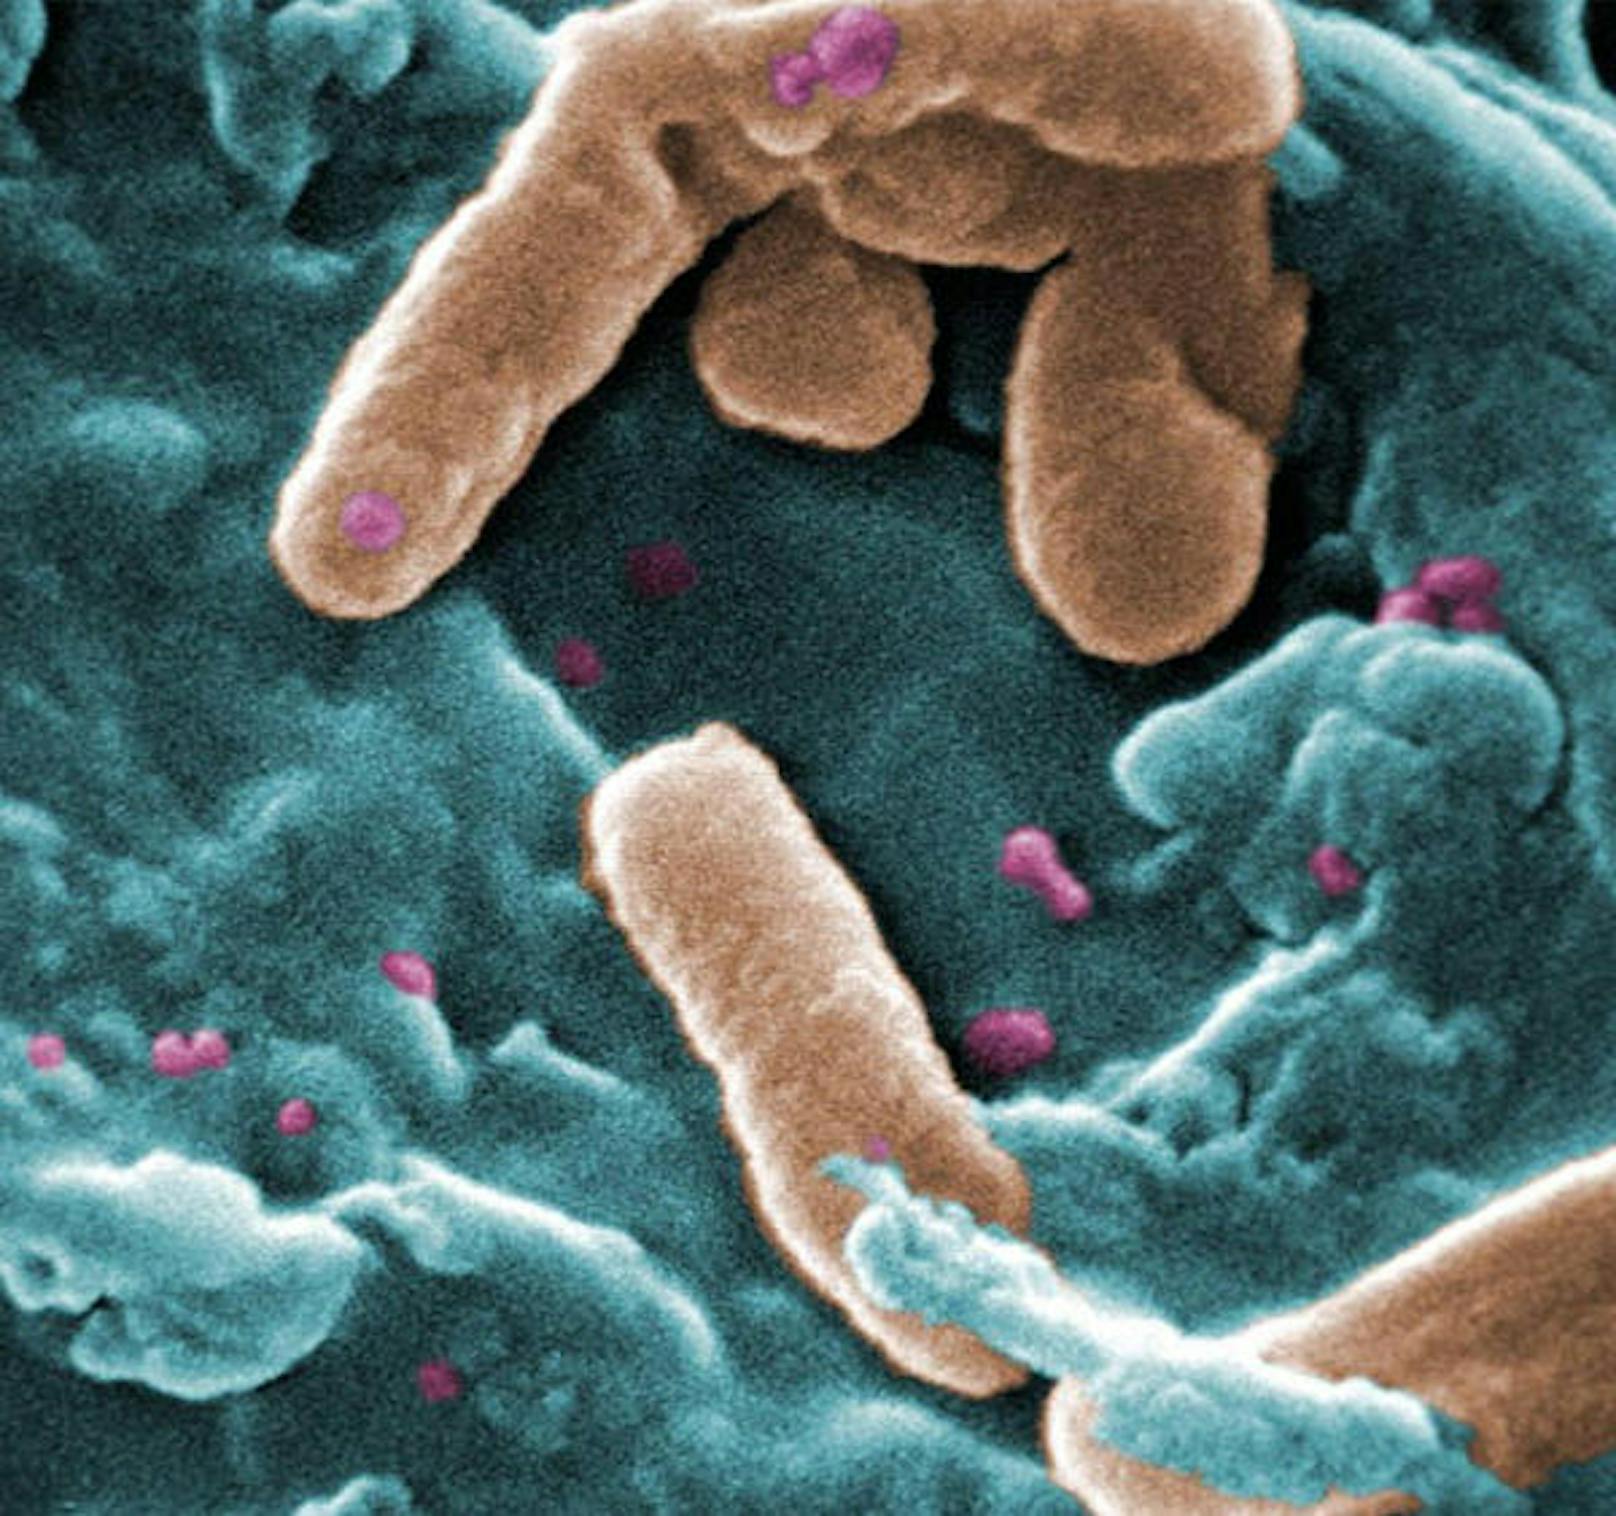 Pseudomonas aeruginosa, Priorität 1: Auch für diese Bakterien gilt es schnellstens neue Antibiotika zu finden.